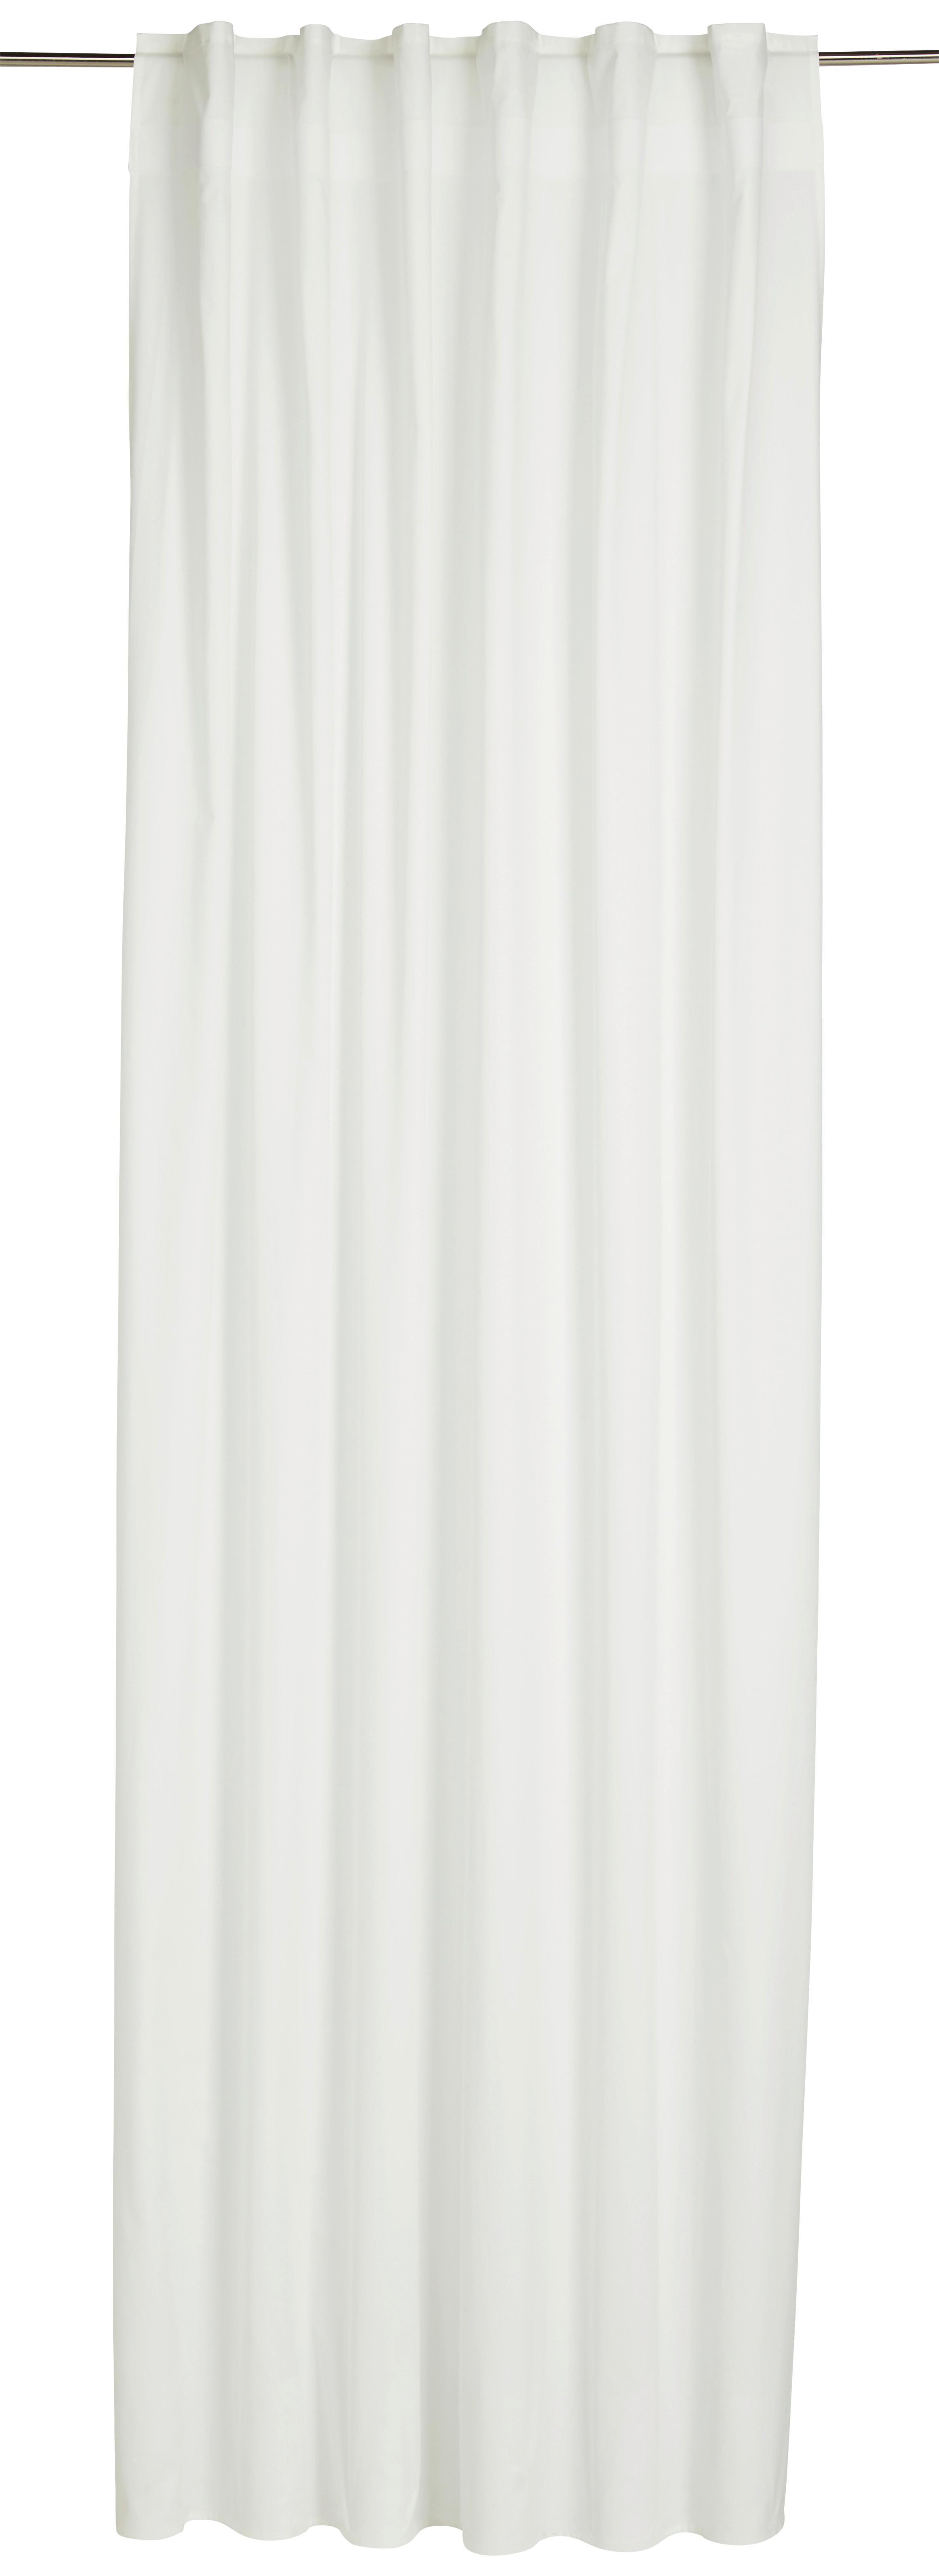 Záves S Pútkami Outdoor, 140/300cm, Sivobiela - biela, Moderný, textil (140/300cm) - Modern Living